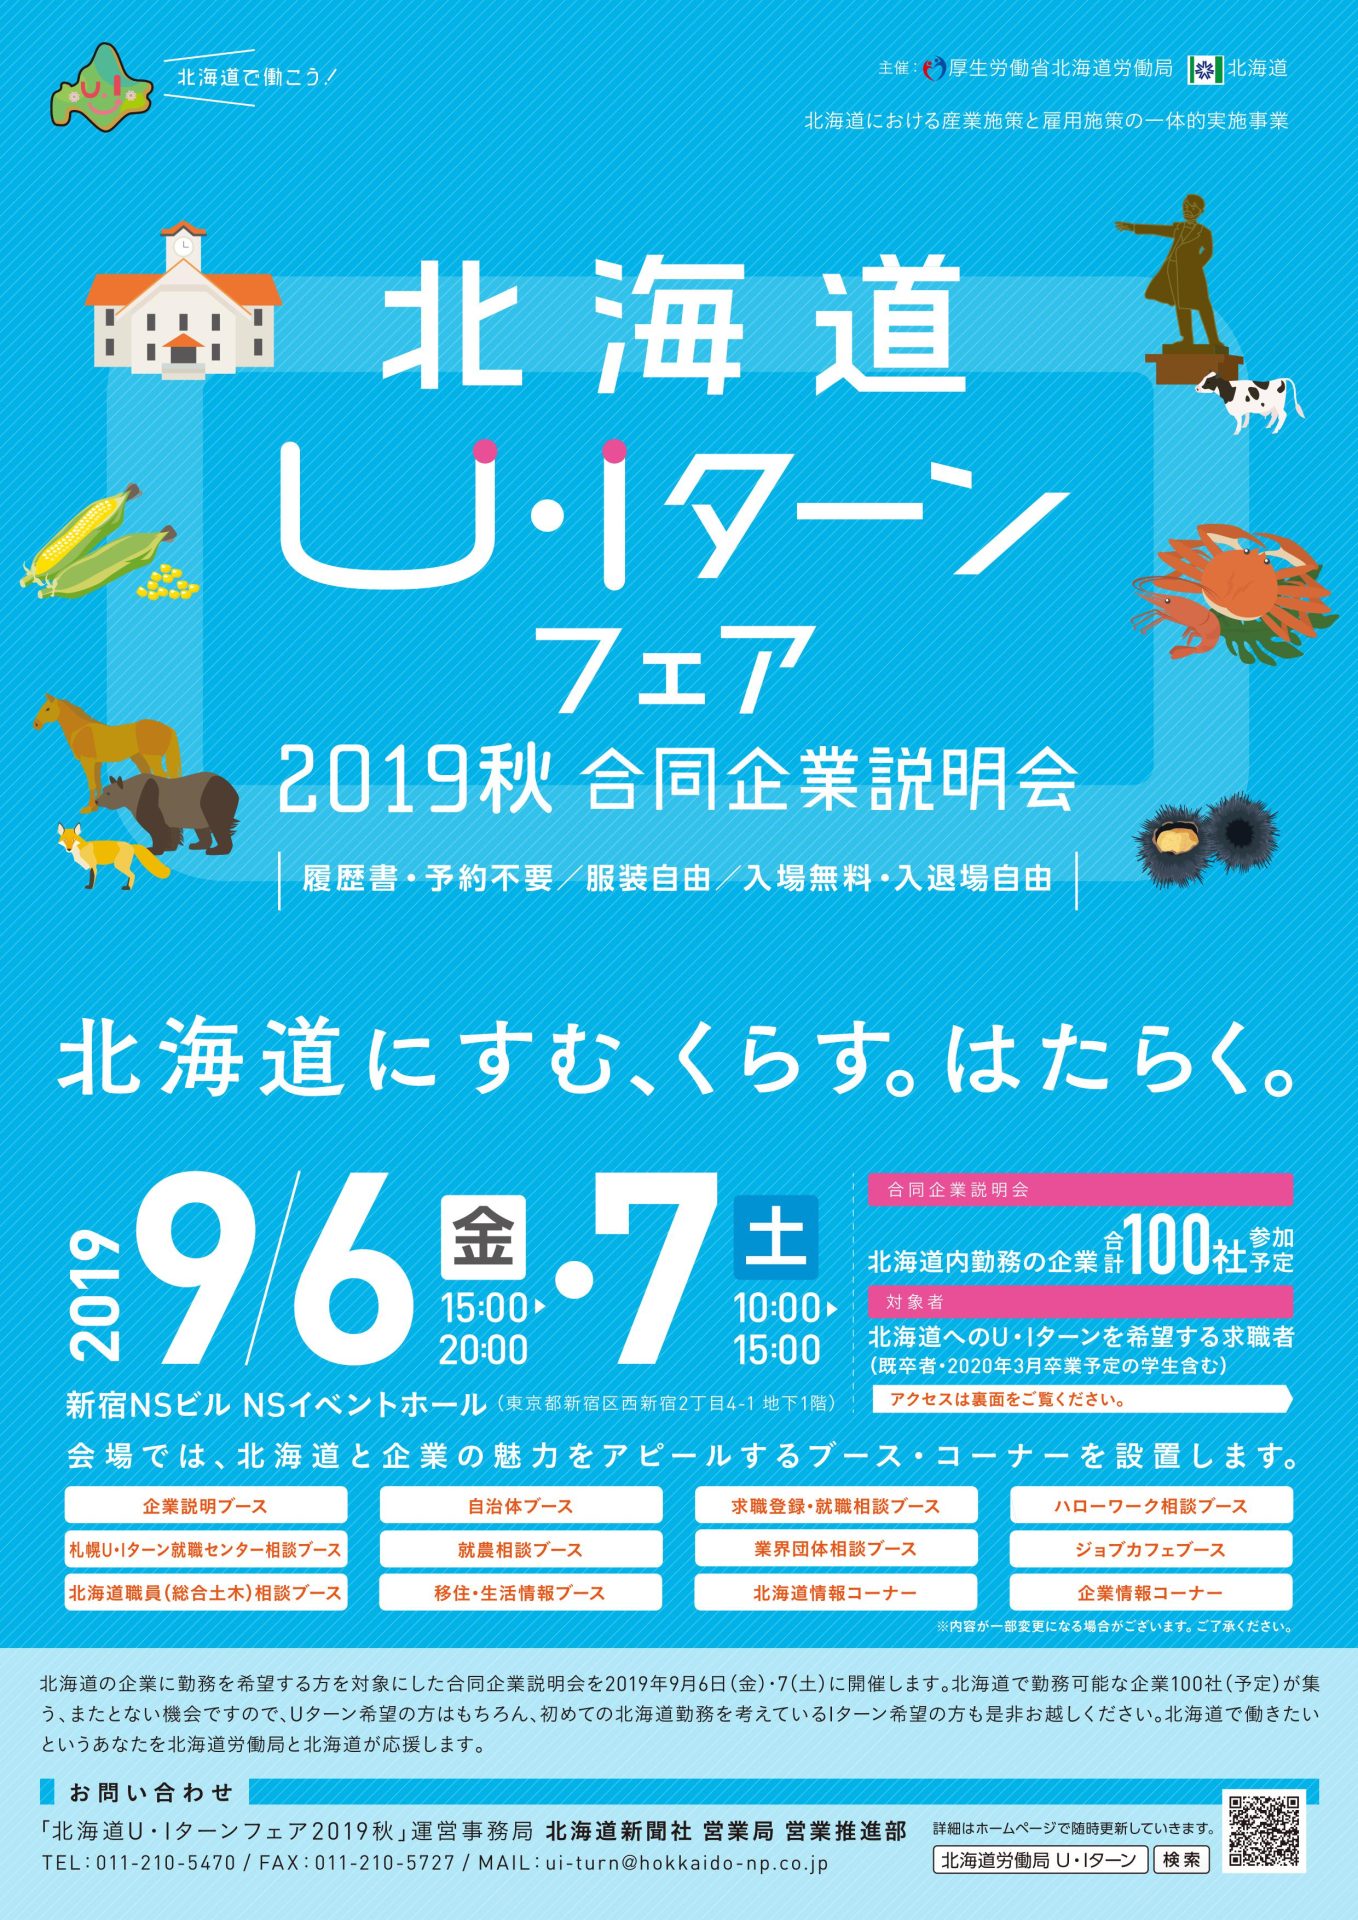 北海道Ｕ･Iターンフェア2019秋 合同企業説明会 | 移住関連イベント情報